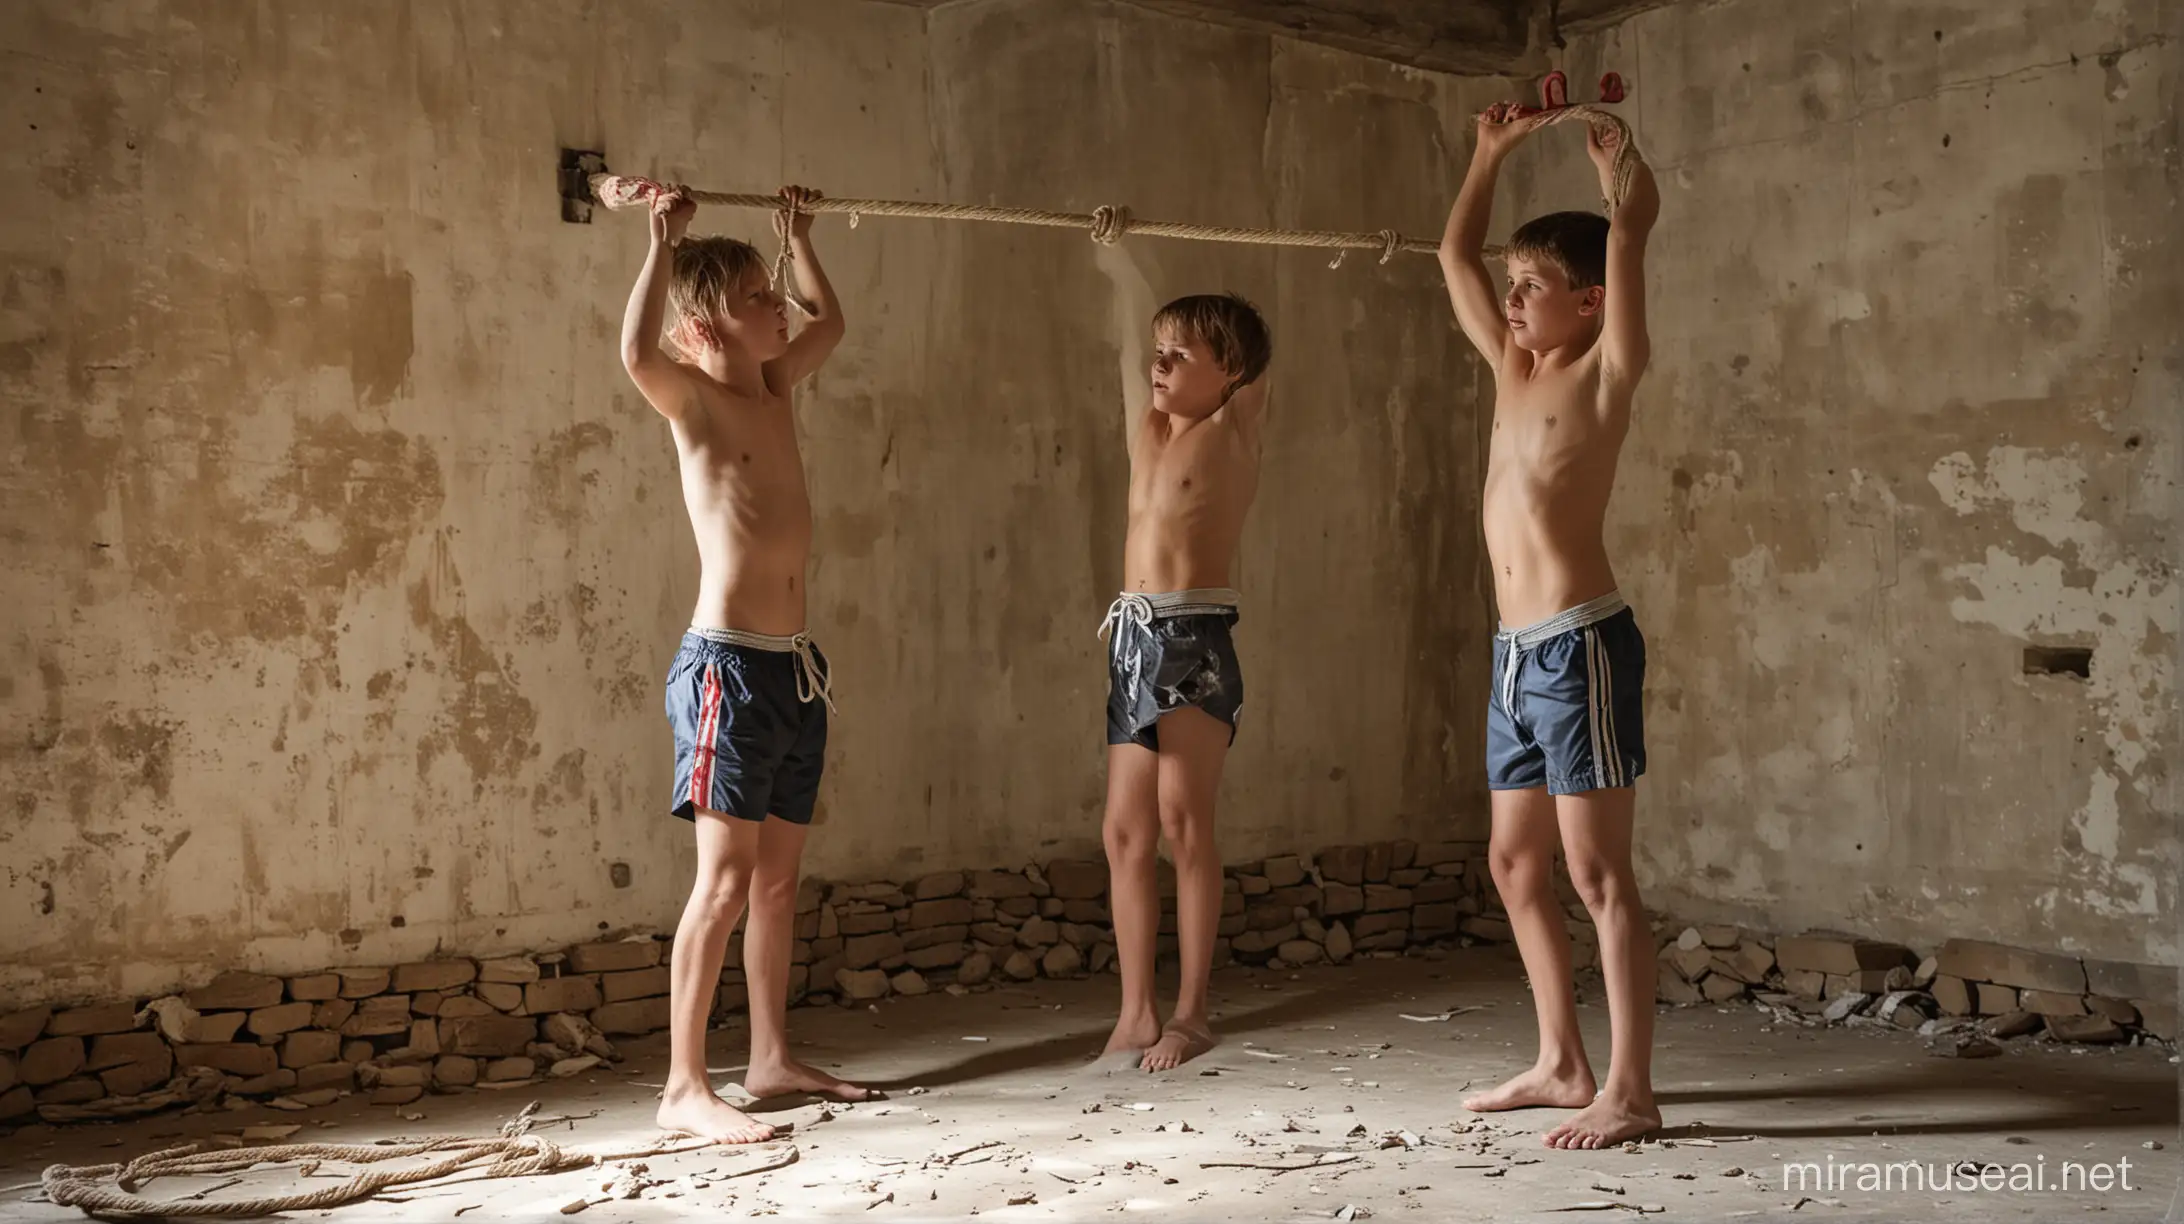 im Keller einer alte verlassen Villa: 3 Jungs, 13 Jahre, kurze Hosen, Speedo, spielen einer ist gefangen, die beiden anderen fesseln seine Arme mit einem Seil über Kopf an die Wand